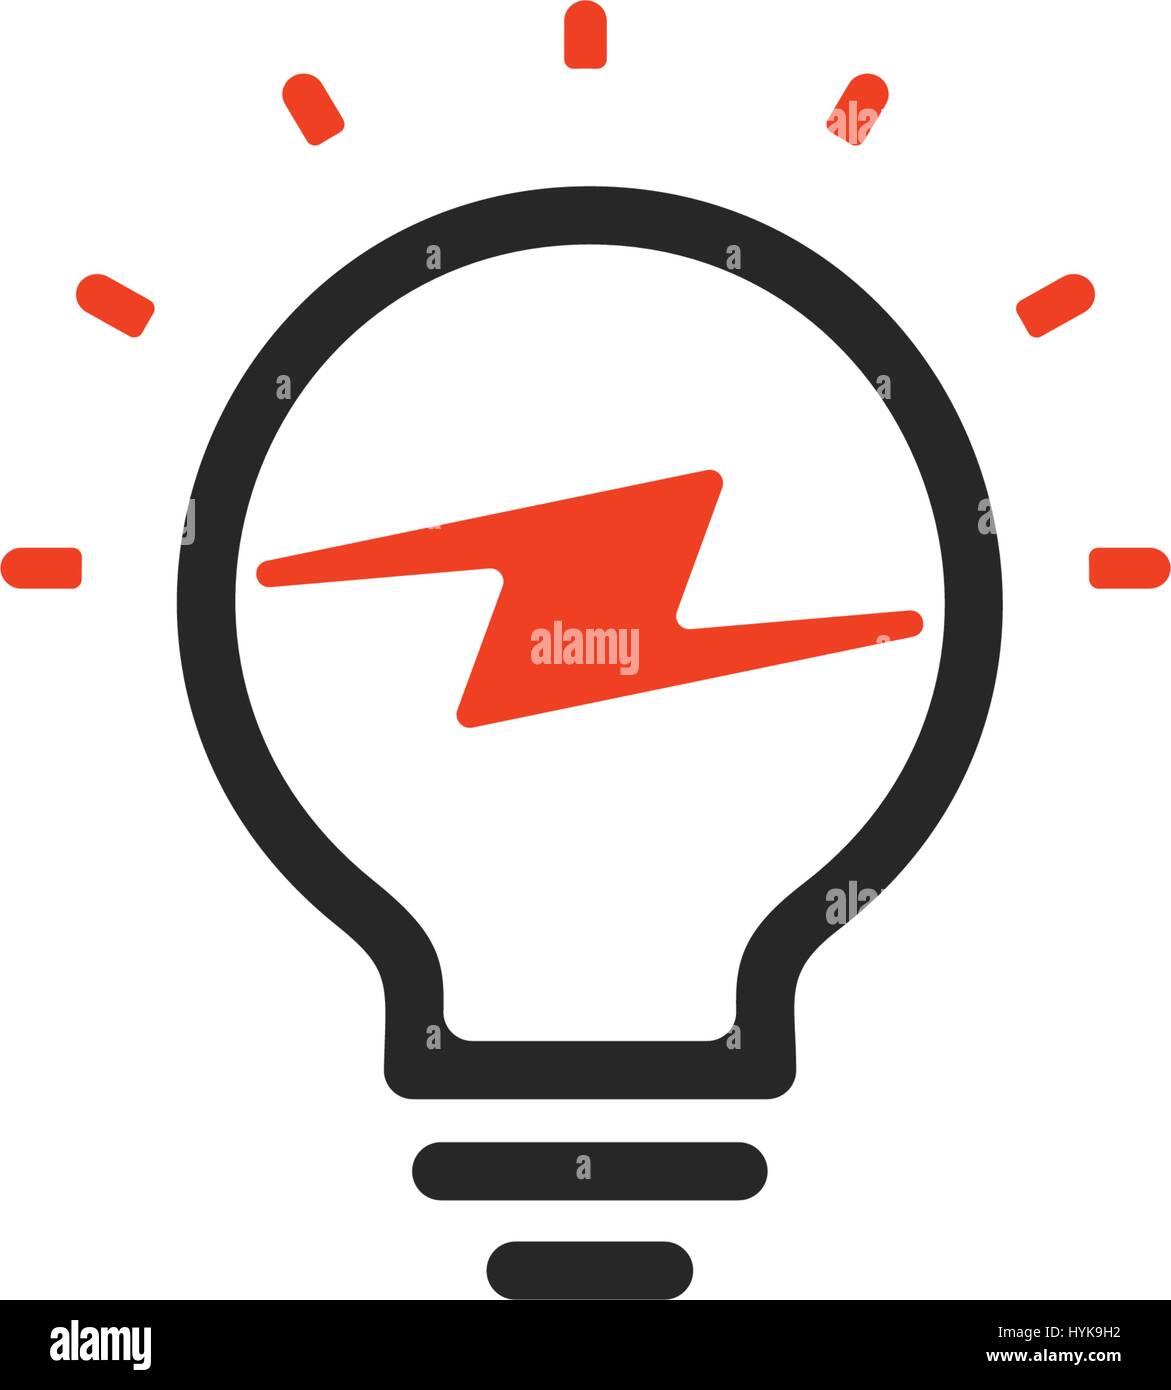 Isolierte Abstrakt rot Glühbirne Kontur Schriftzug, Logo auf weißem Hintergrund, Spannung-Vektor-Illustration Beleuchtung Stock Vektor